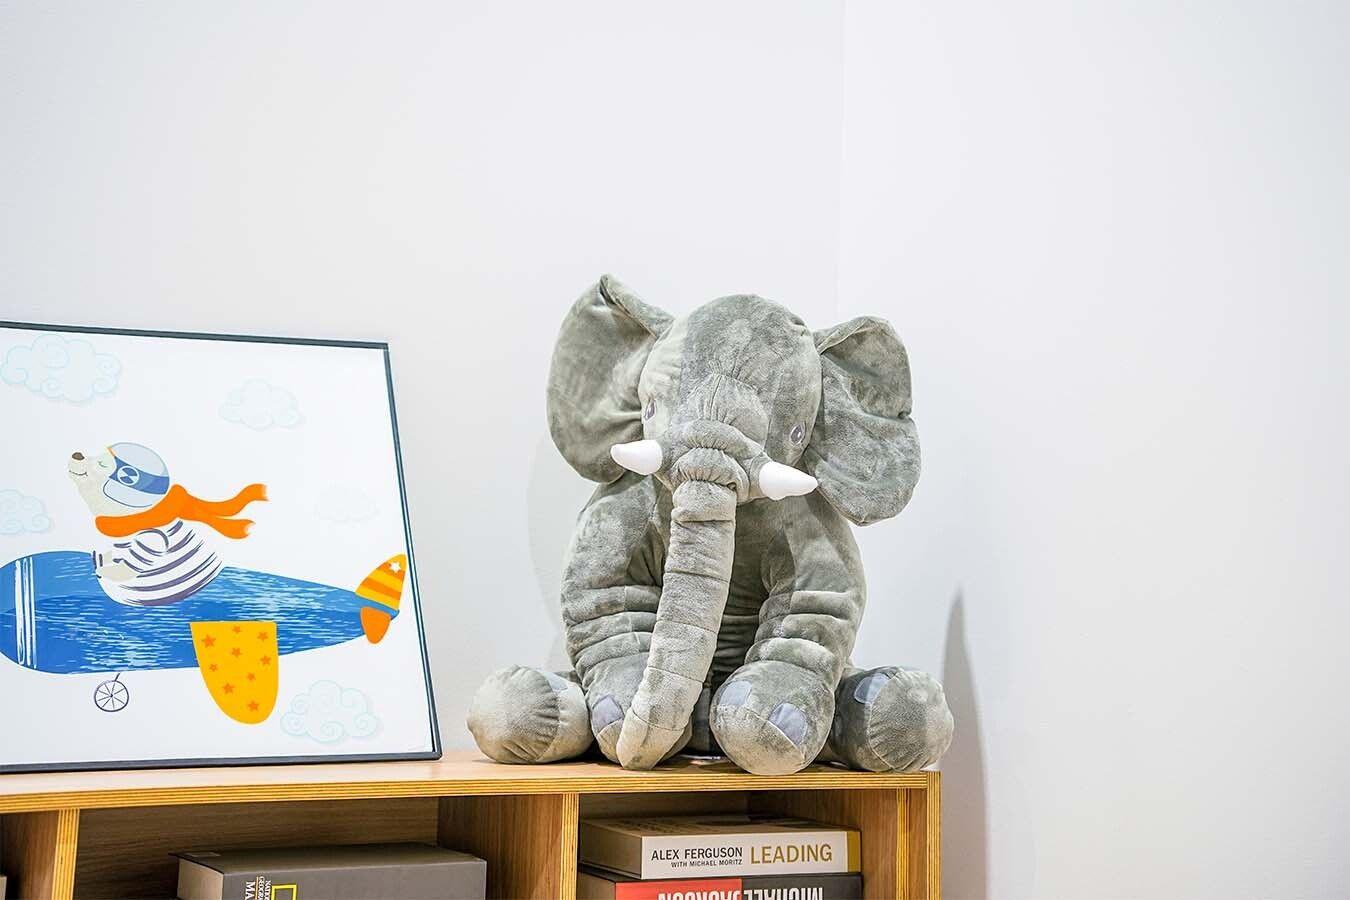 Knuffel-olifant XL (60 cm groot)